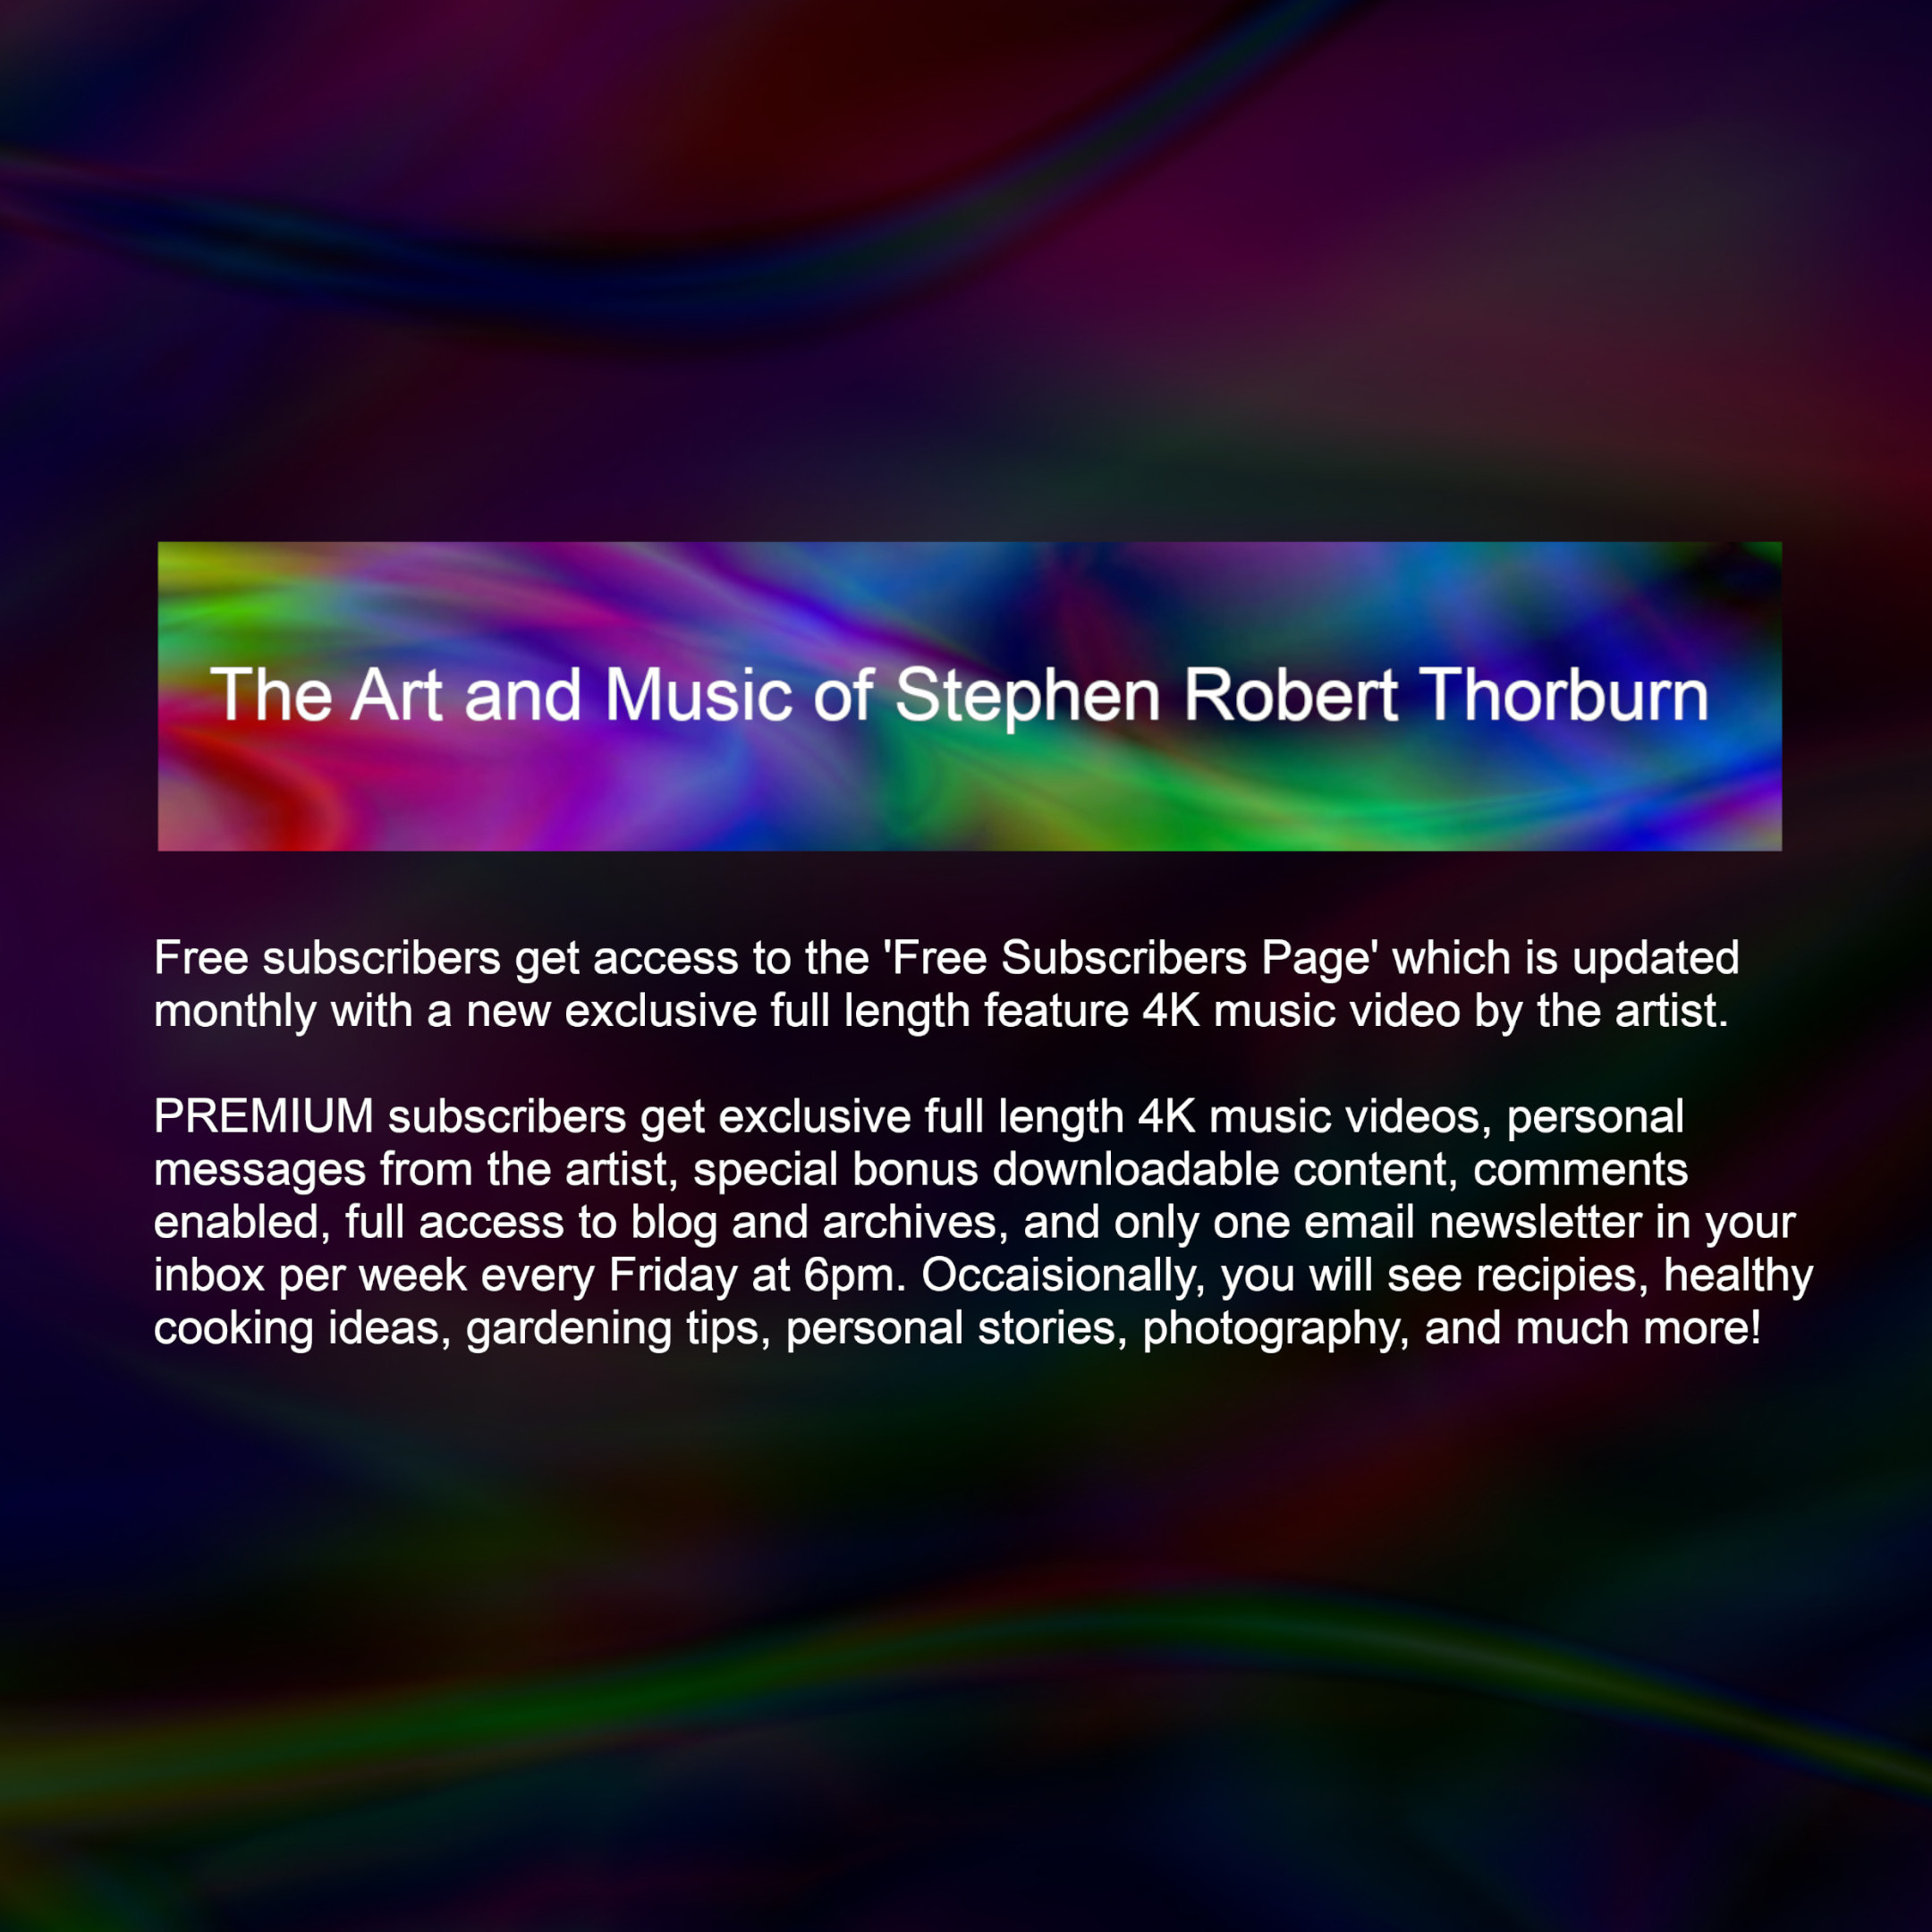 The Art and Music of Stephen Robert Thorburn